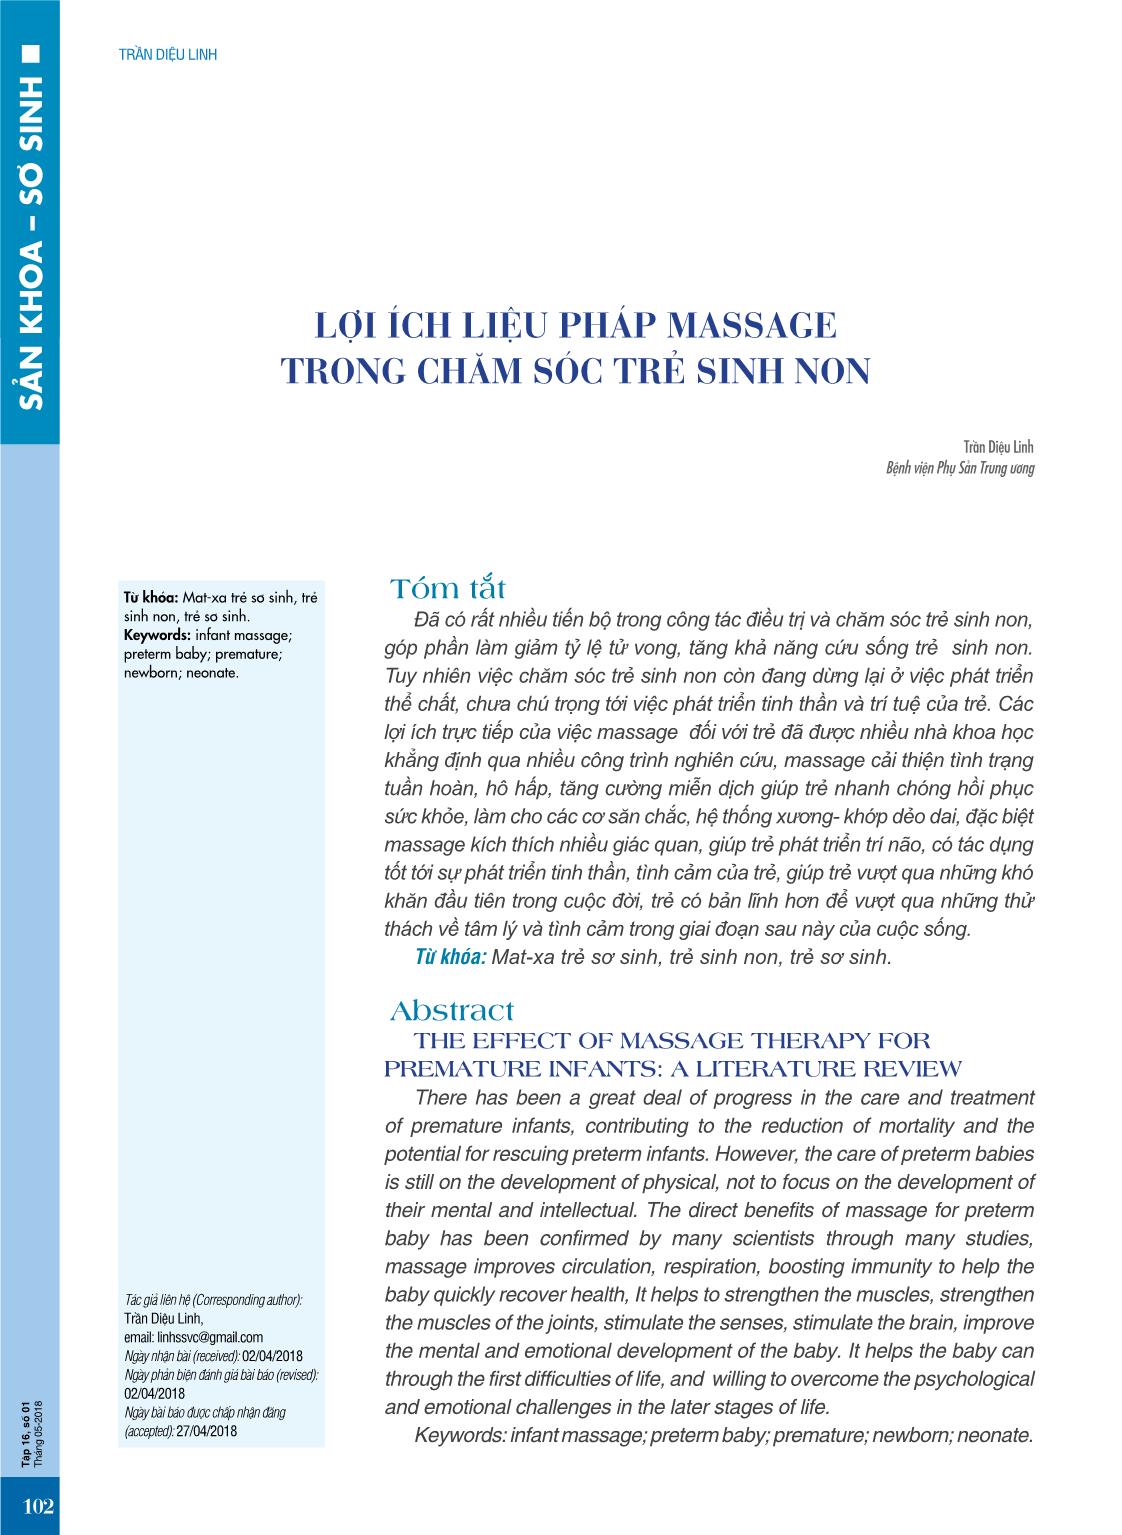 Lợi ích liệu pháp massage trong chăm sóc trẻ sinh non trang 1